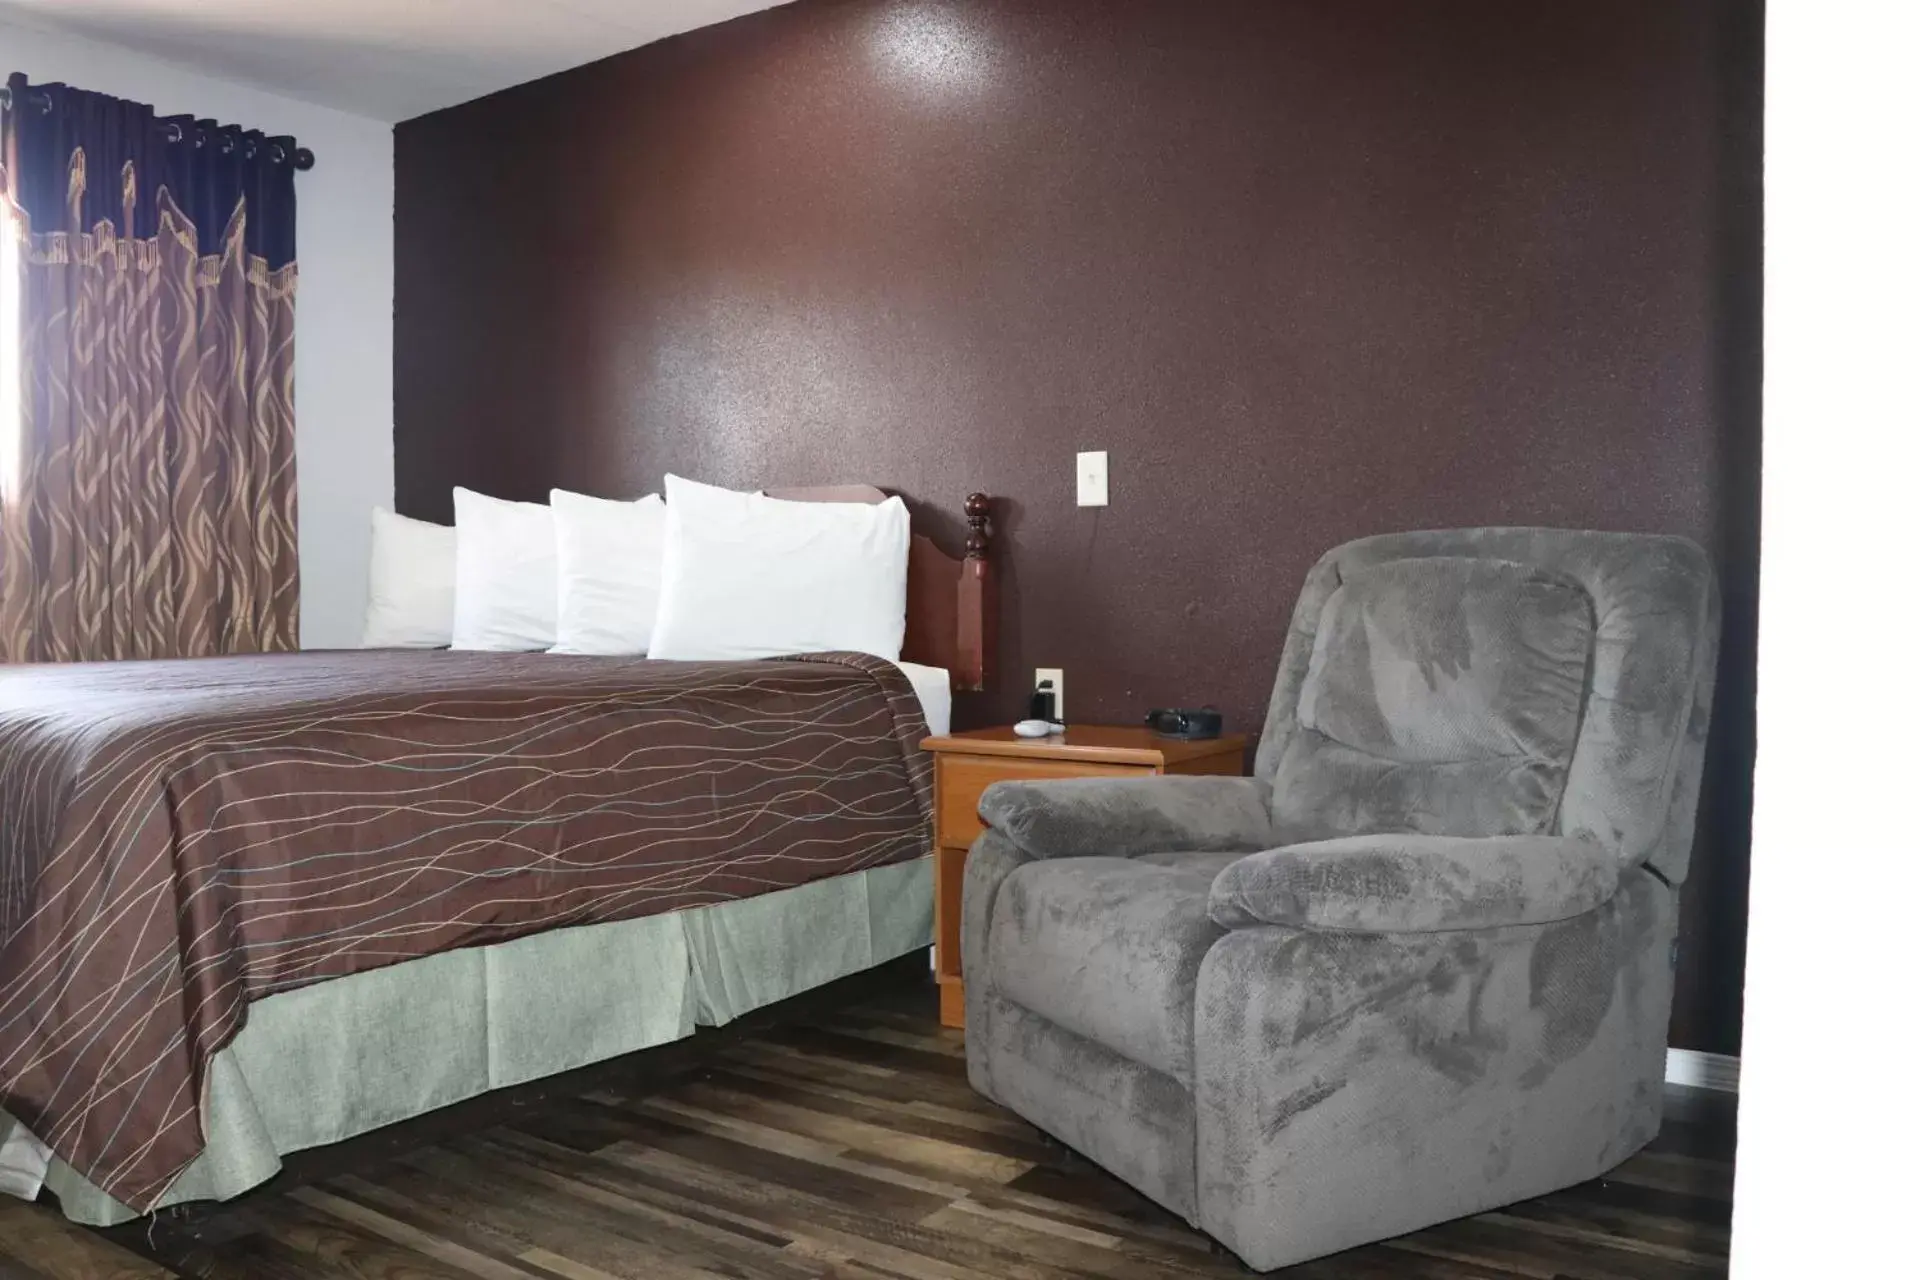 Bed in Western motel